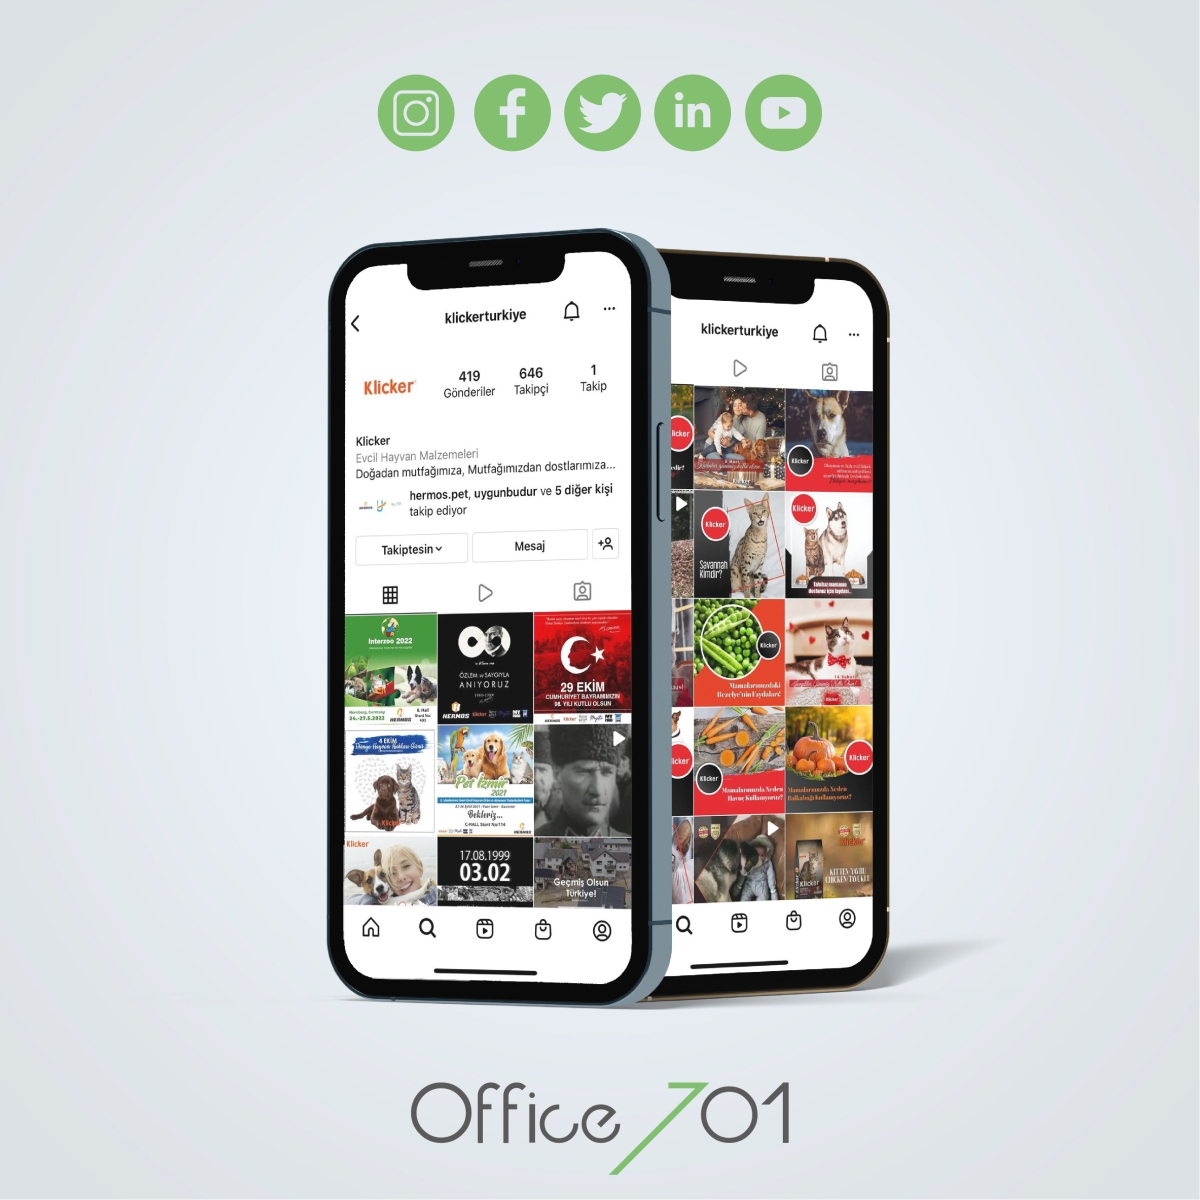 Office701 | Klicker | Social Media Management